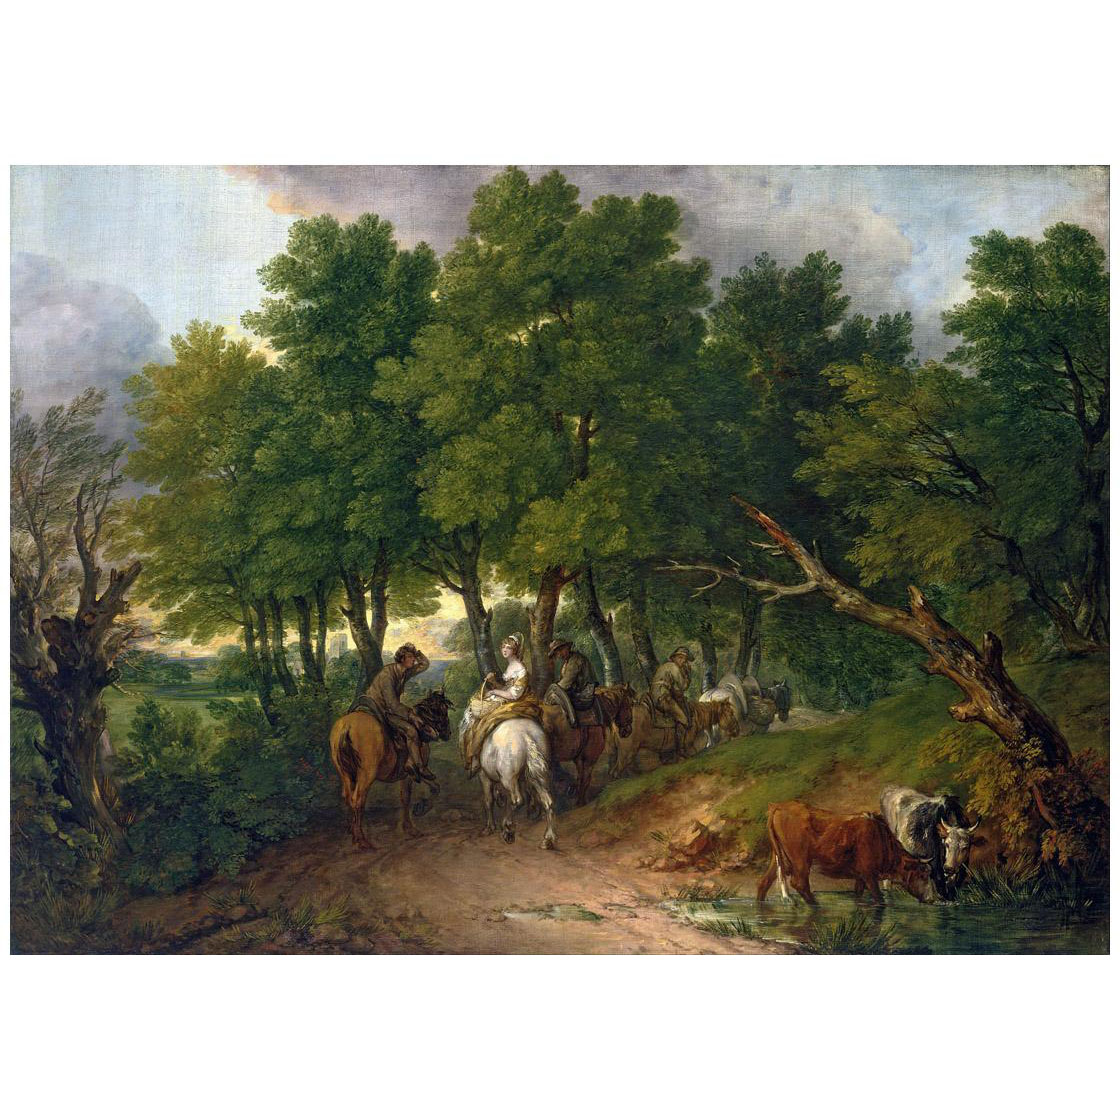 Thomas Gainsborough. Road from Market. 1767. Toledo Museum of Art